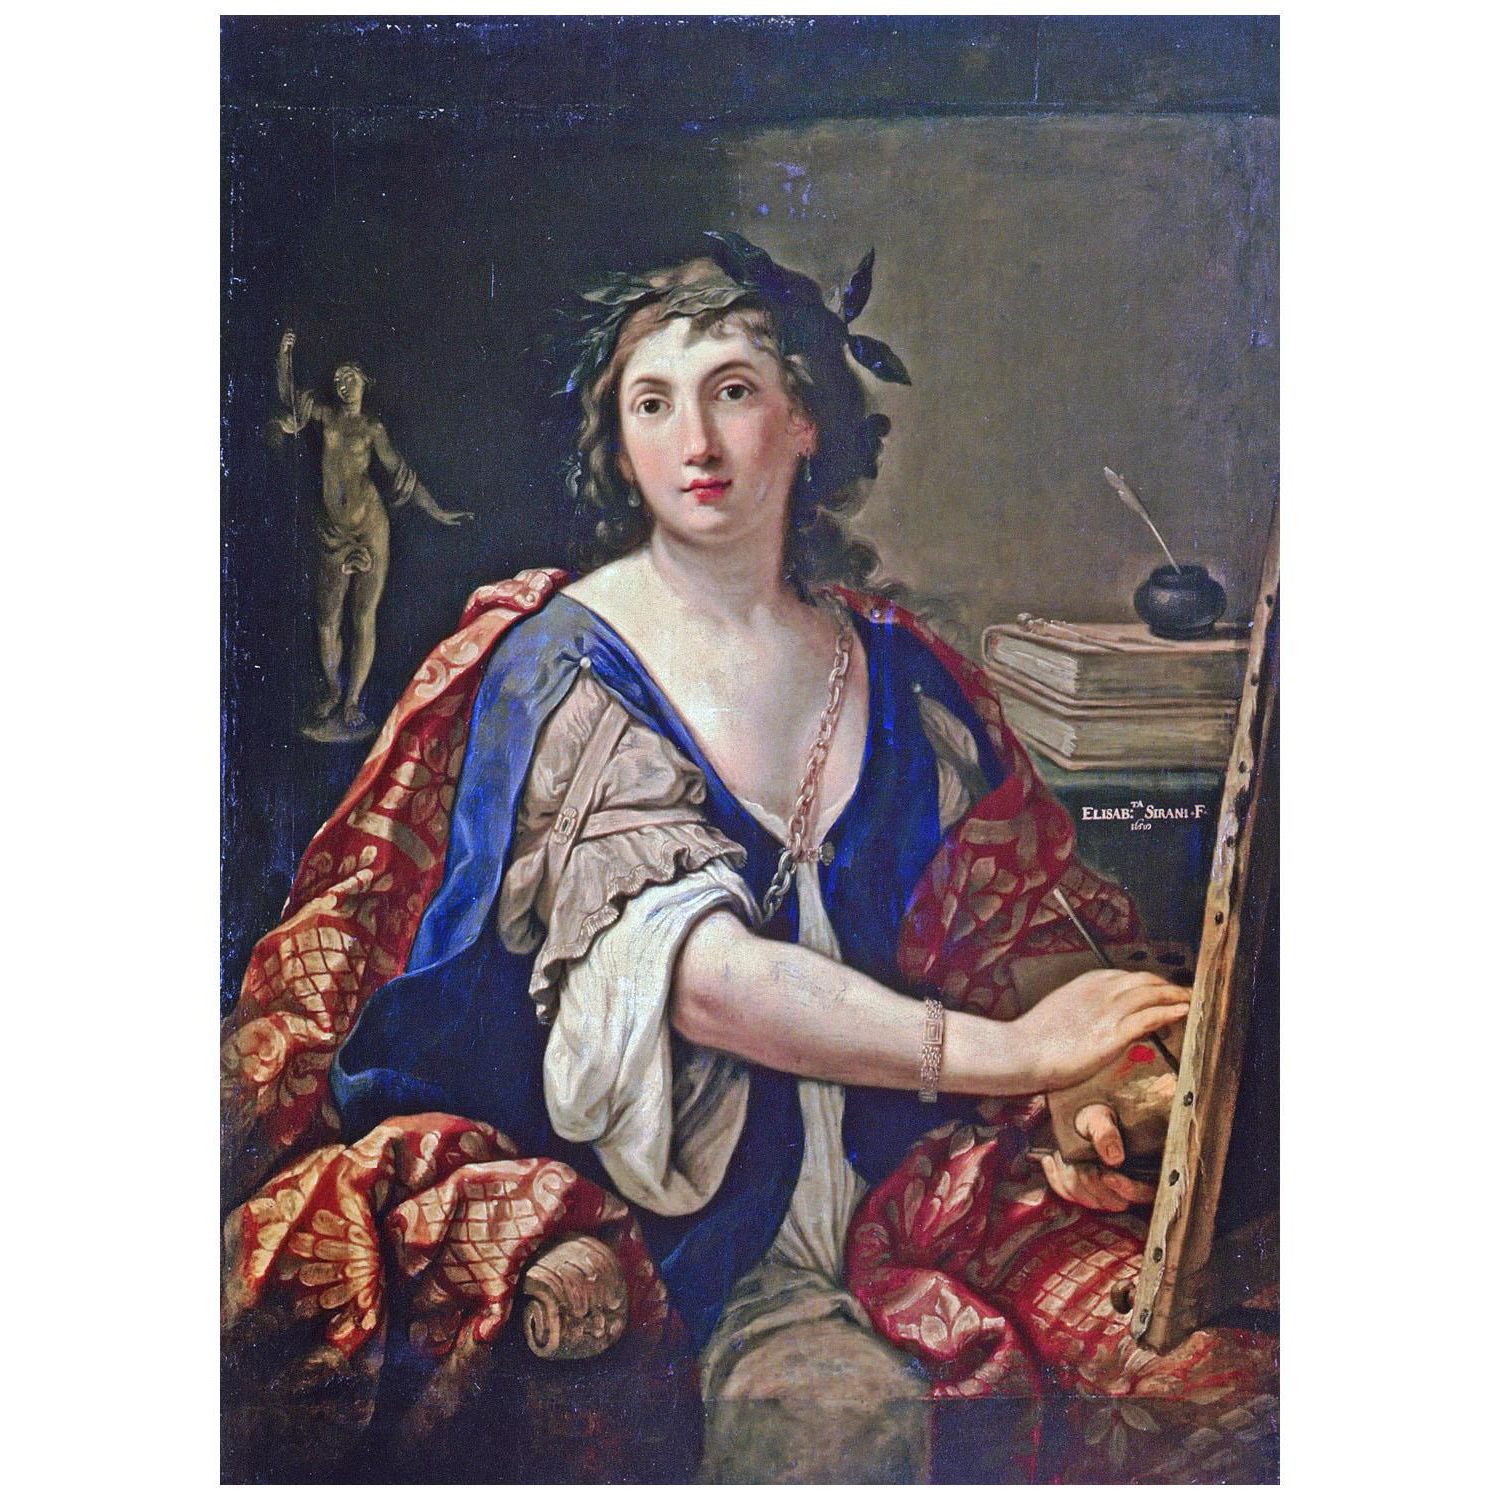 Elisabetta Sirani. Autoritratto come Allegoria della pittura. 1658. Pushkin Museum